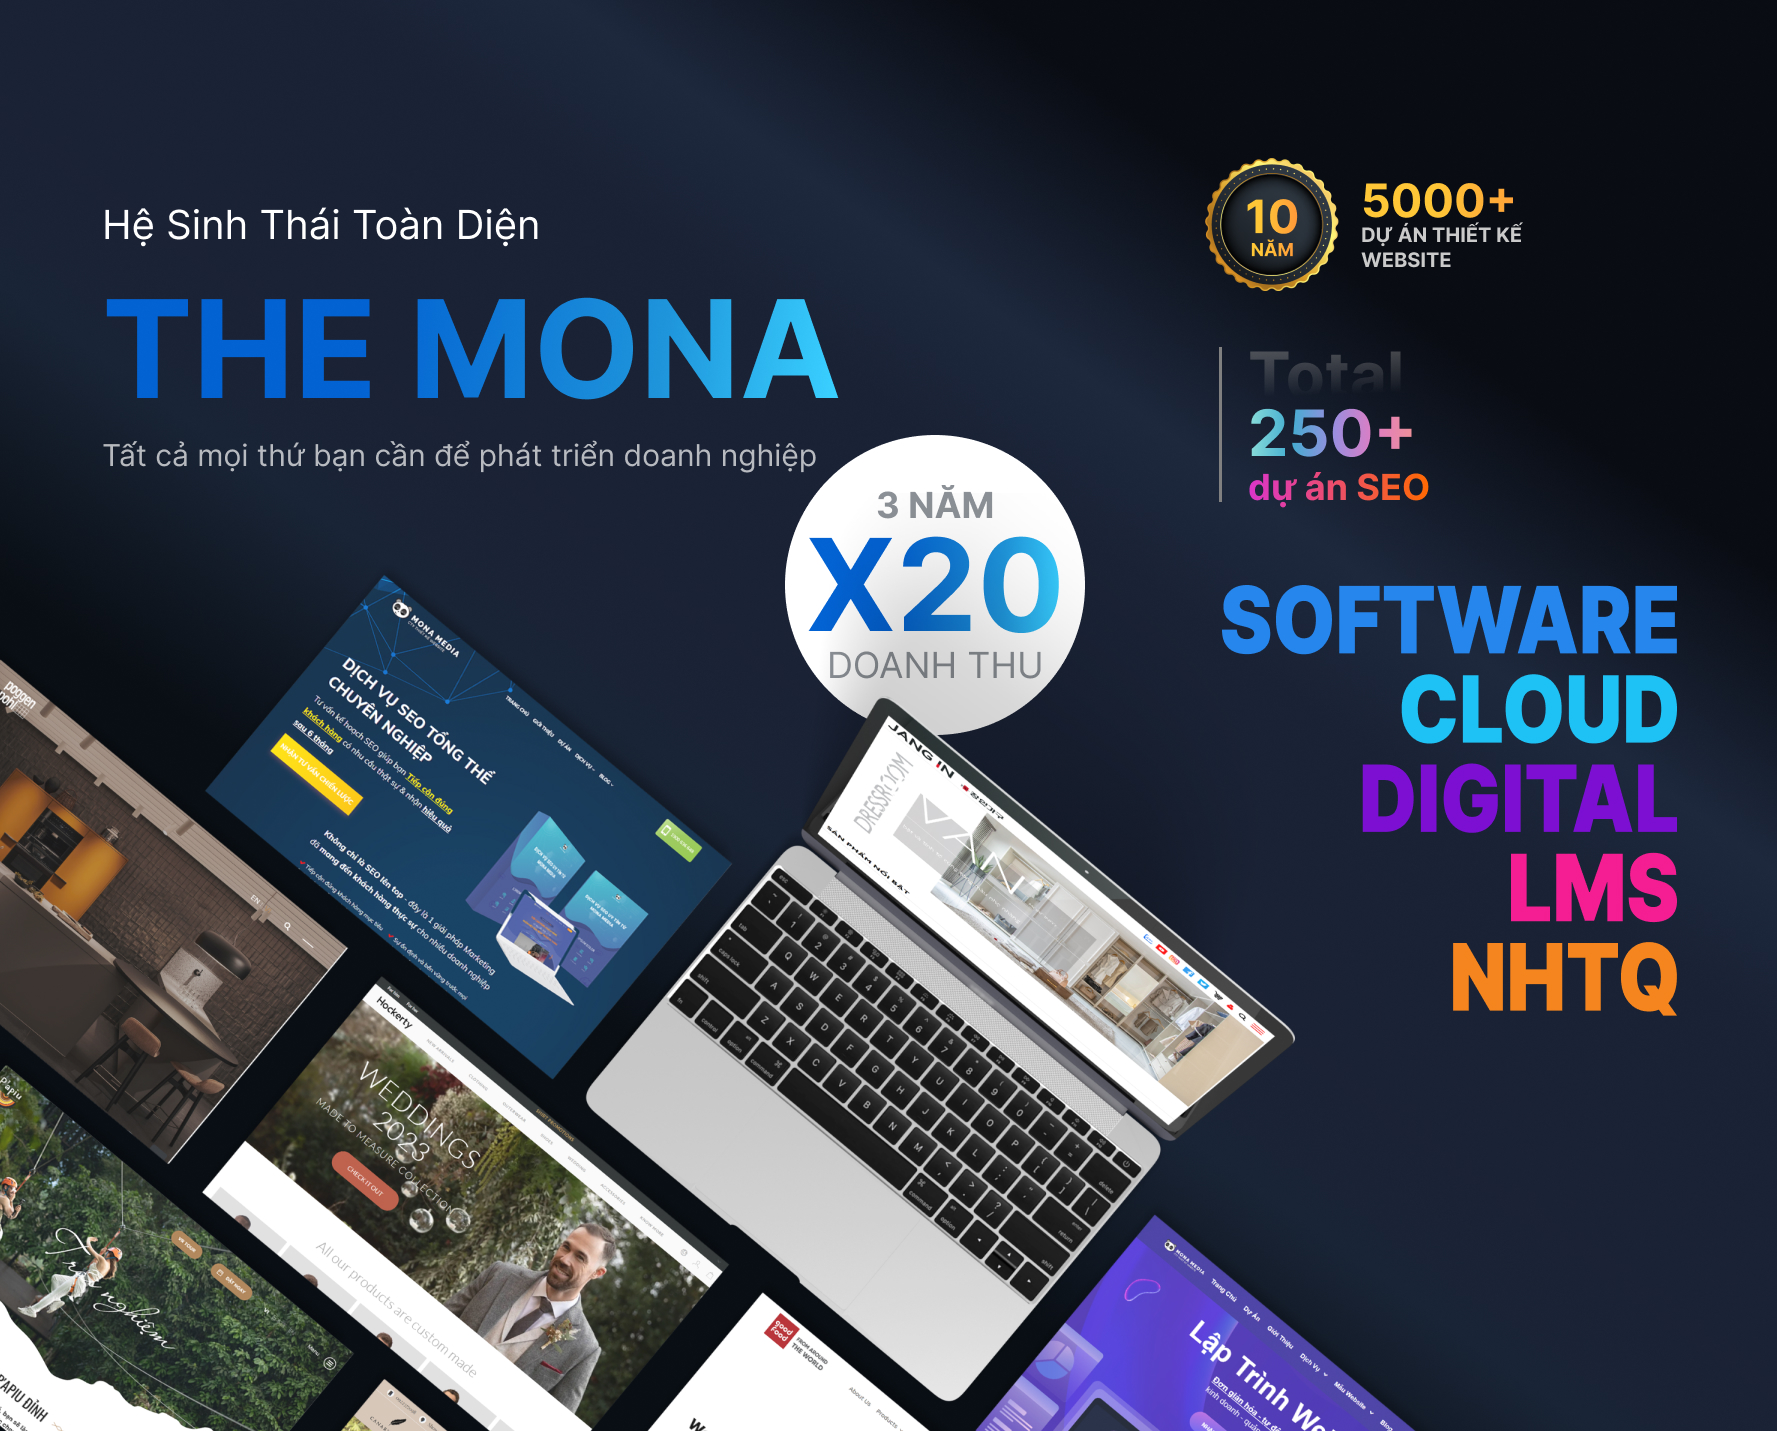 Marketing Agency - Mona Media